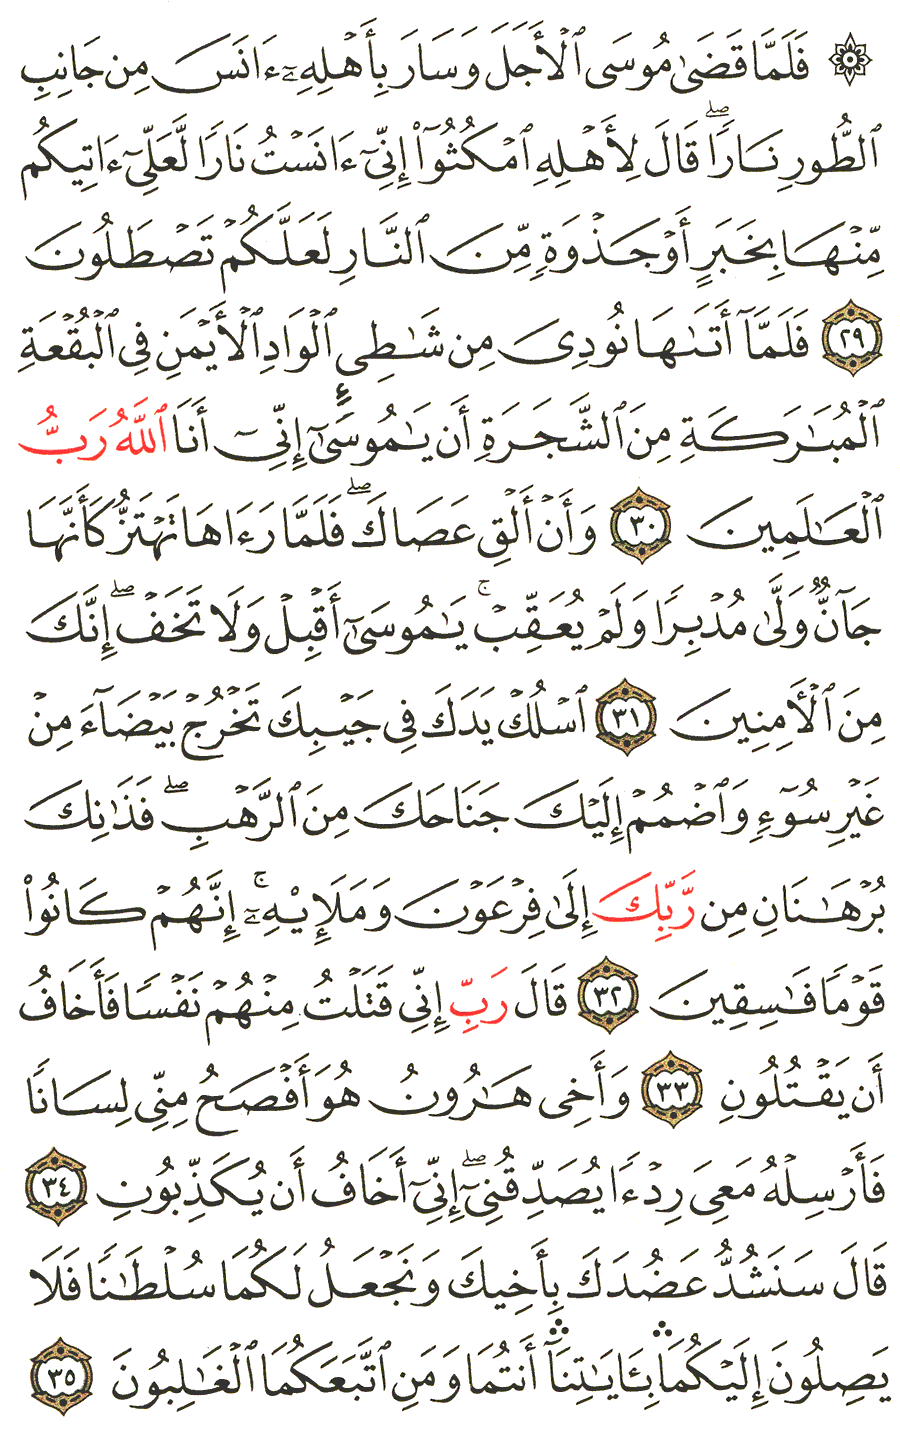 الصفحة 389 من القرآن الكريم